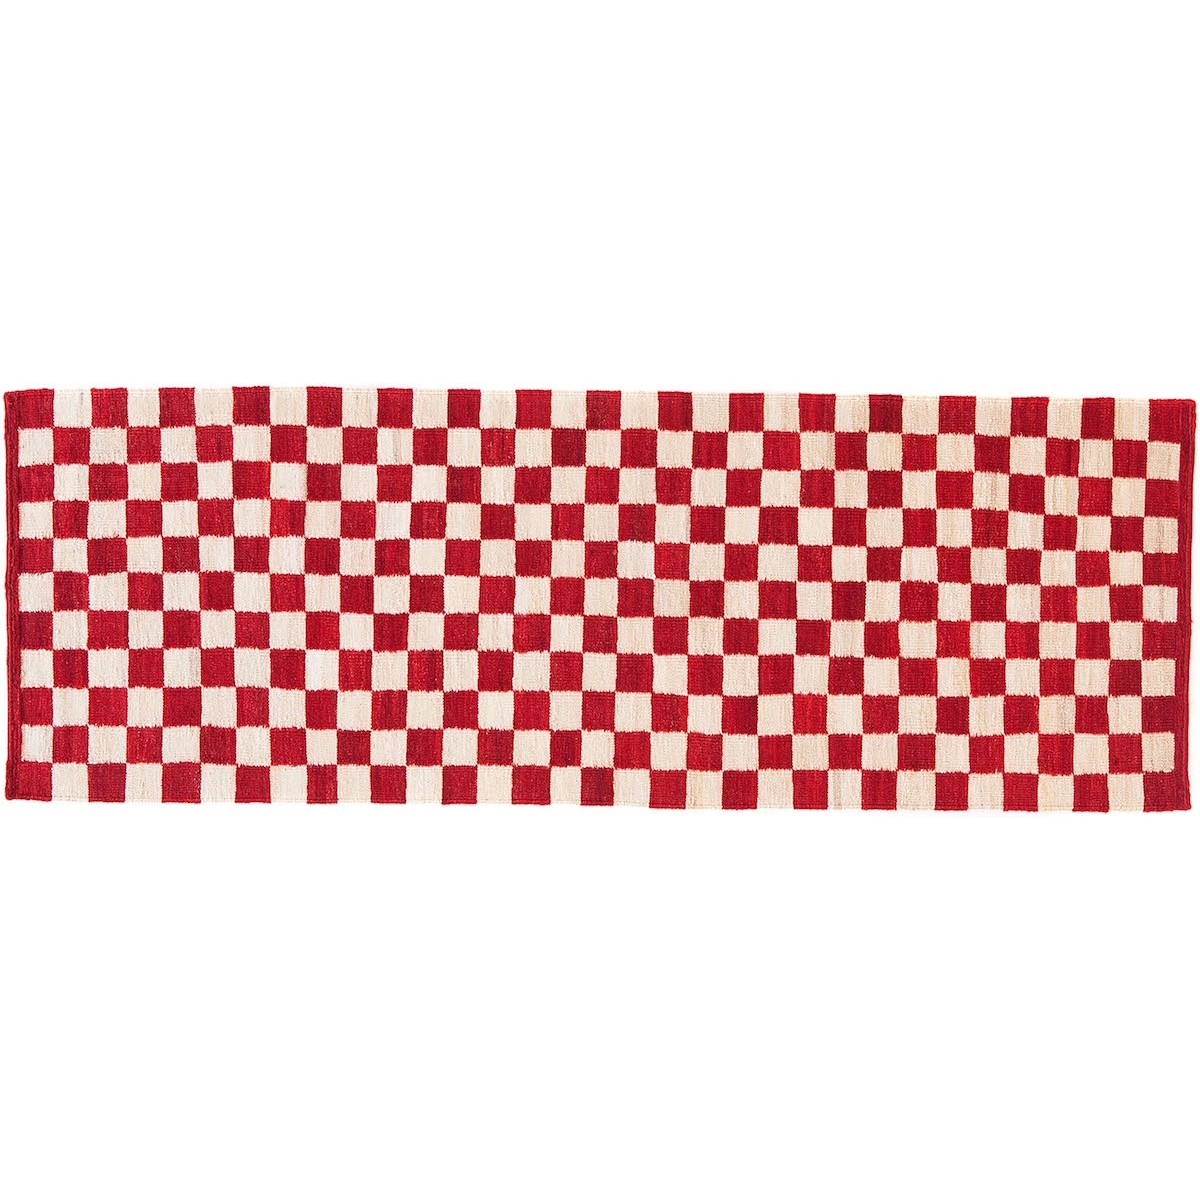 80x240cm - Melange Pattern 5 rug